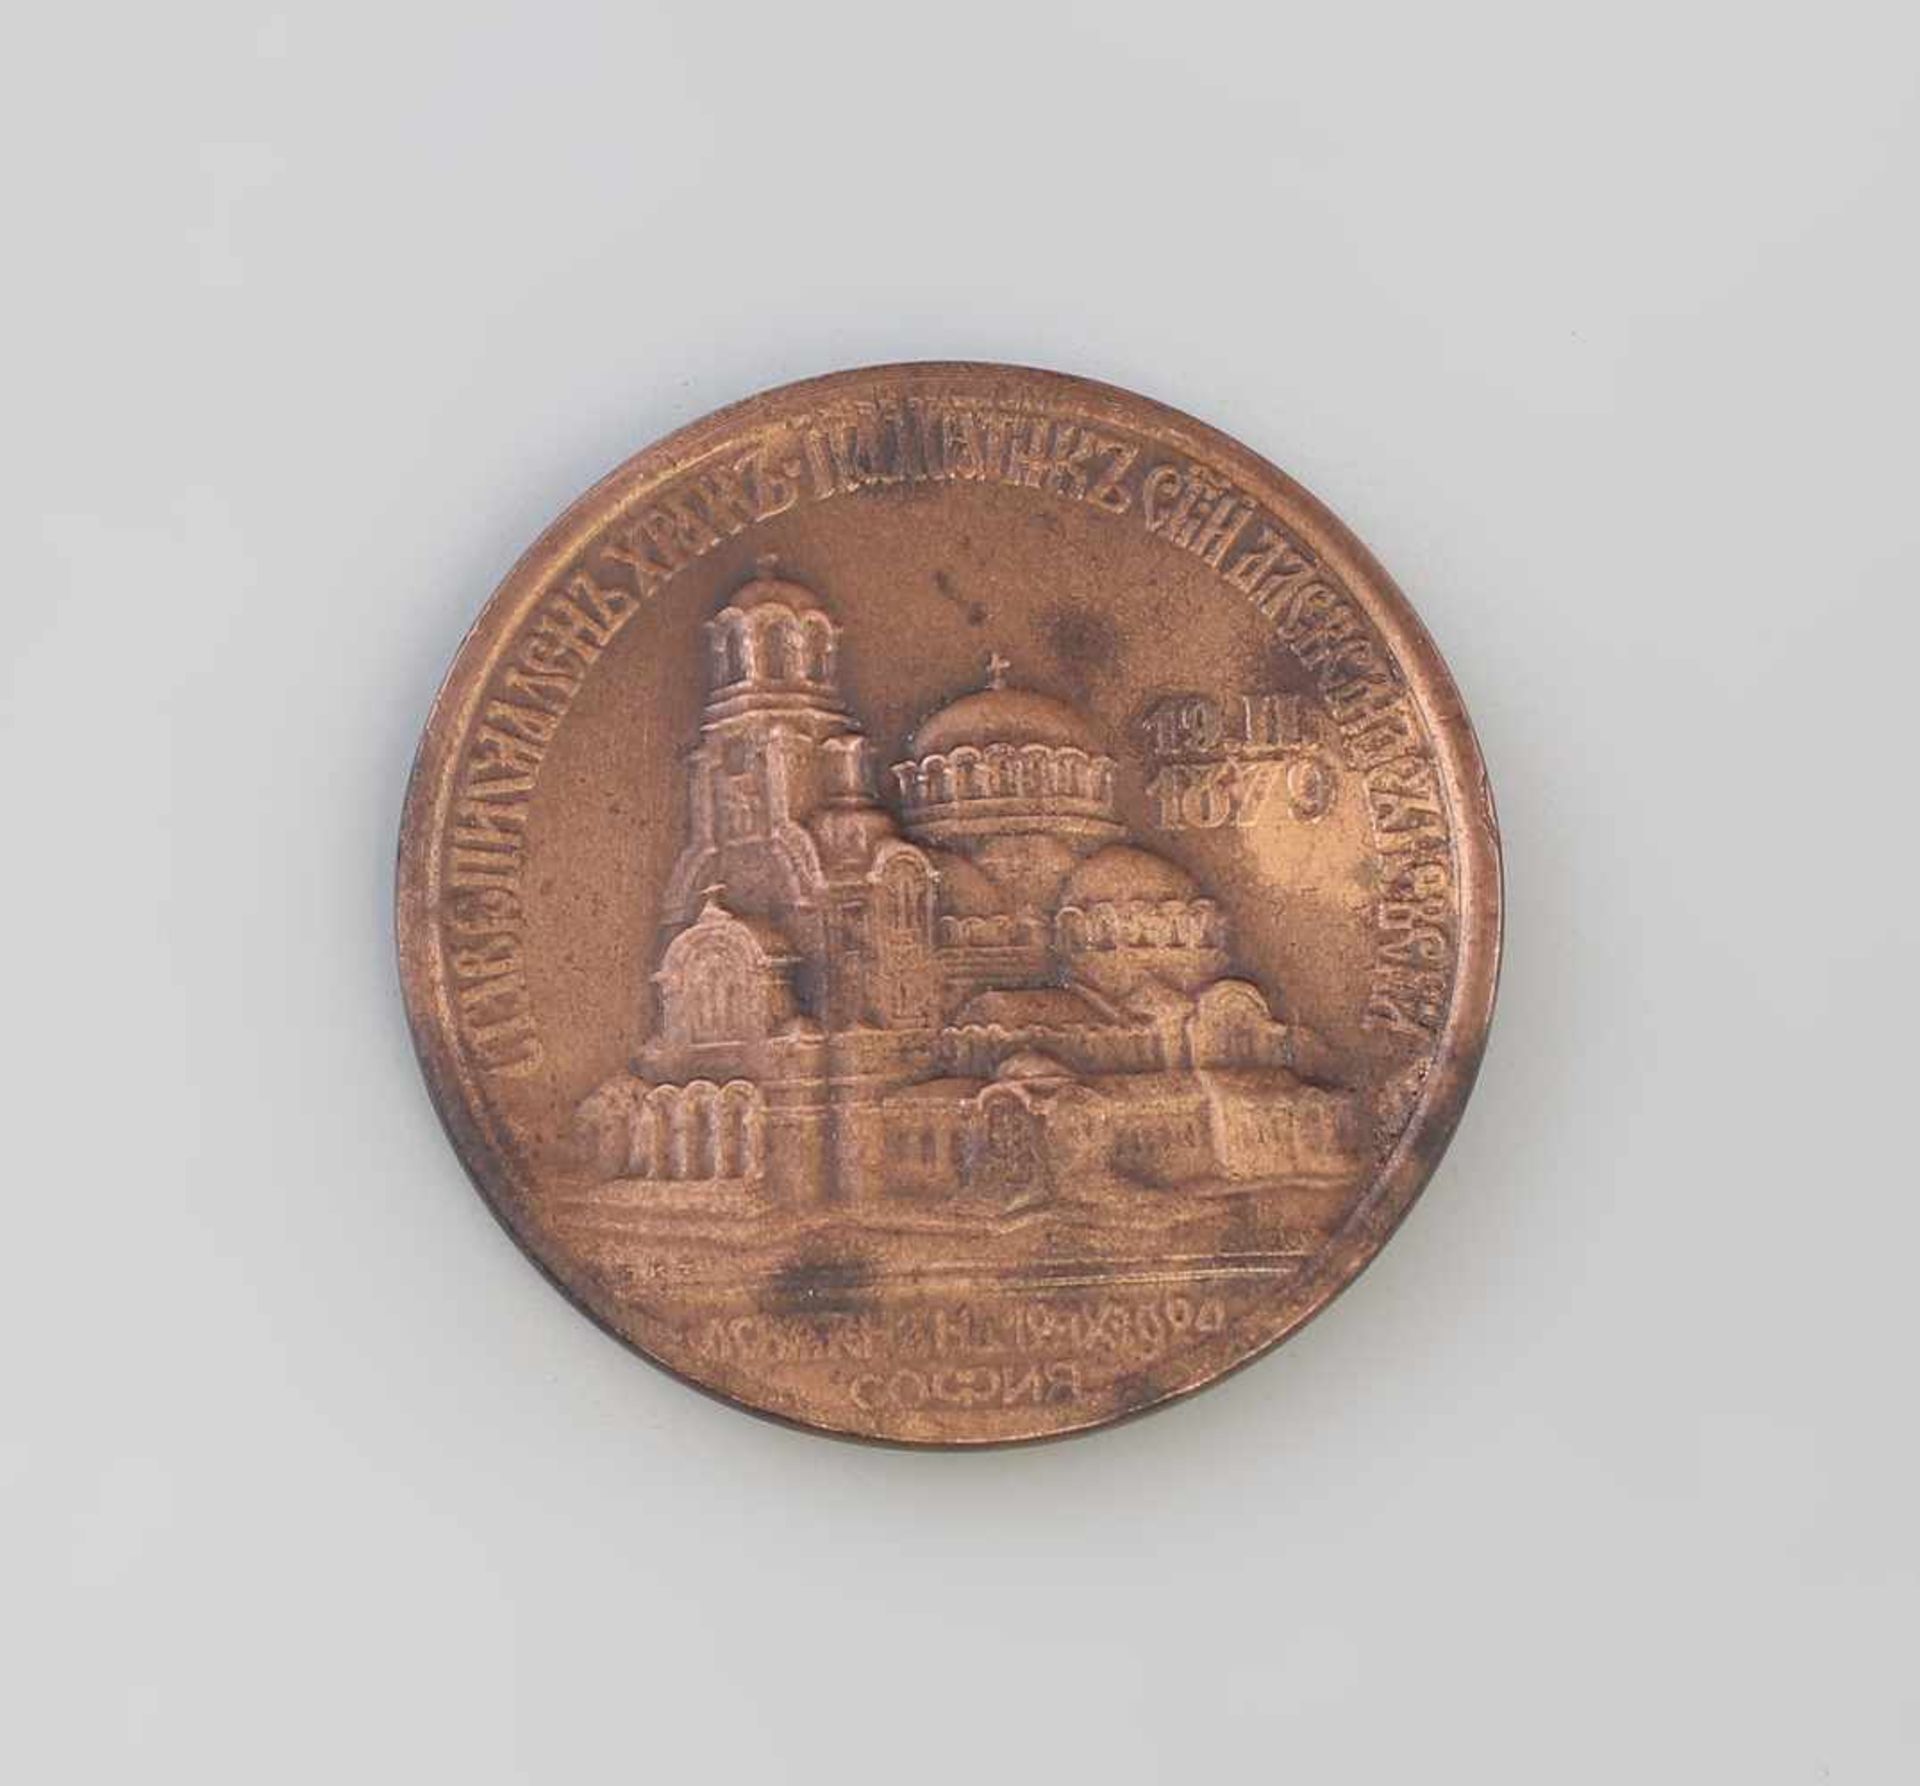 Bulgarische Medaille Alexander Newski Kathedrale 1924bronzefarb. Metall, zur Weihe Alexander- - Image 2 of 2